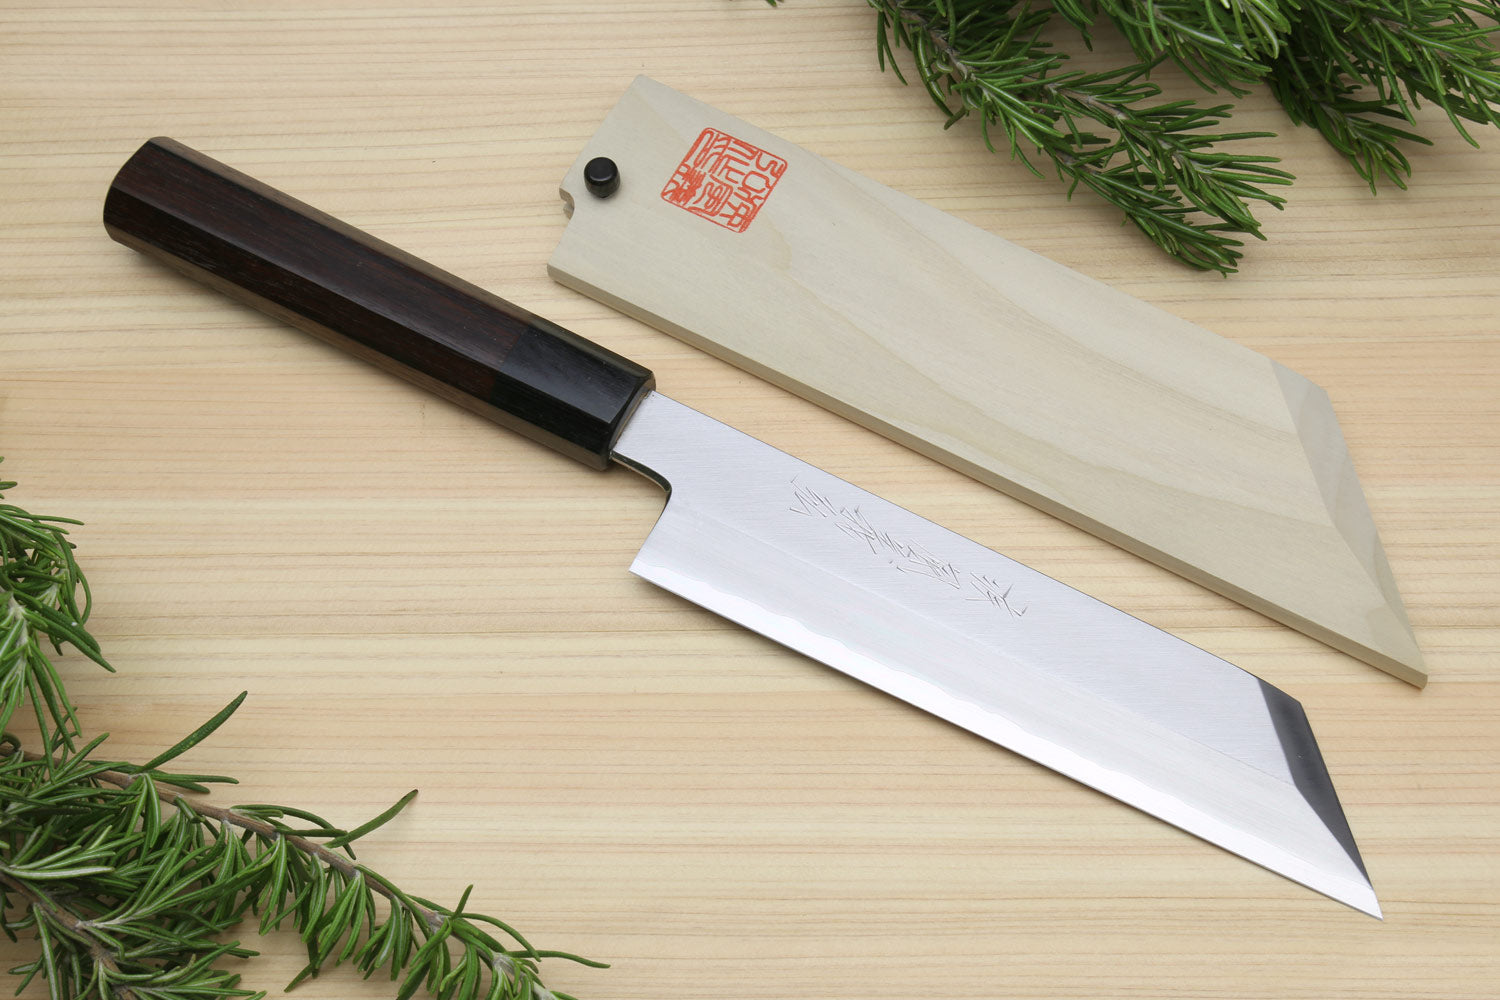 5 best kitchen knives for vegetarians and vegans– Koi Knives